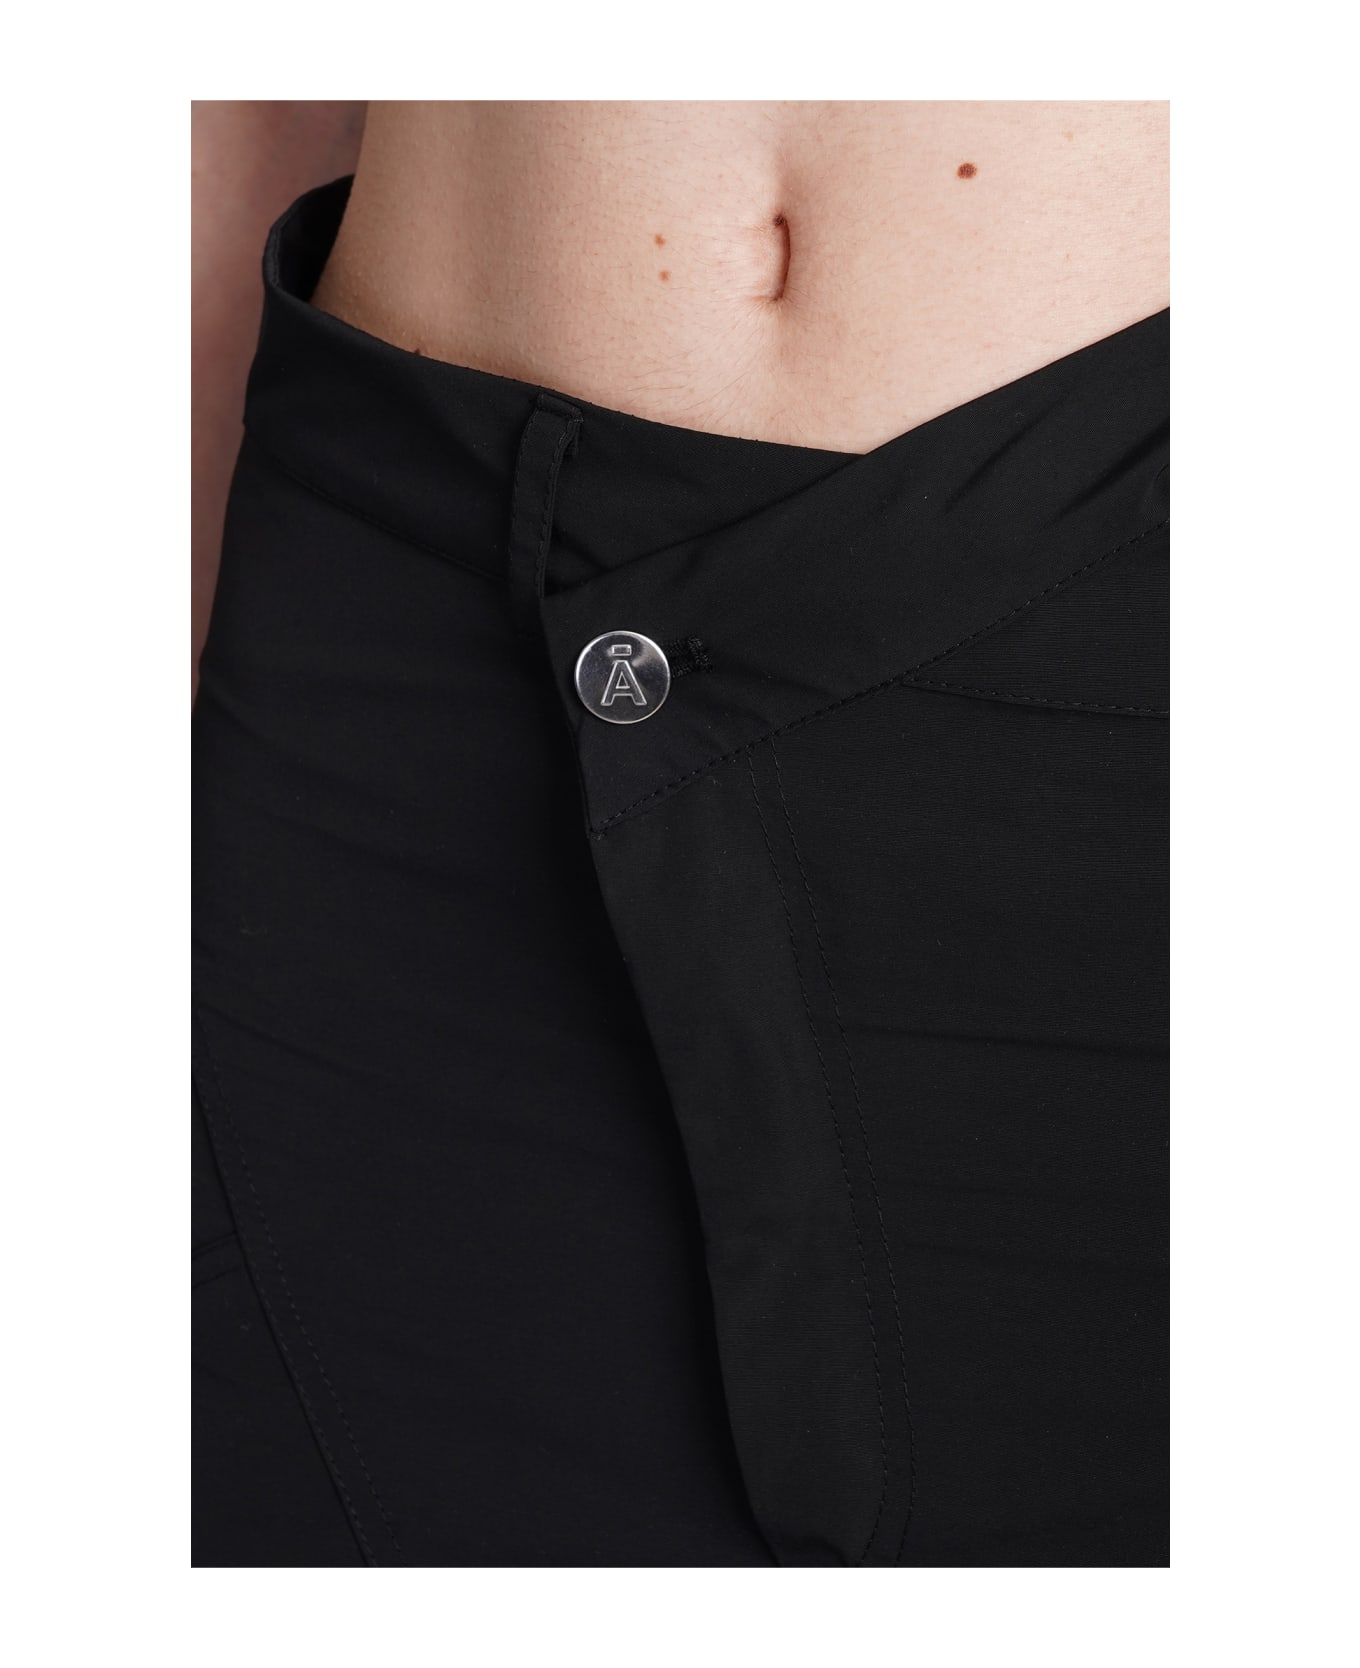 ANDREĀDAMO Pants In Black Polyester - black